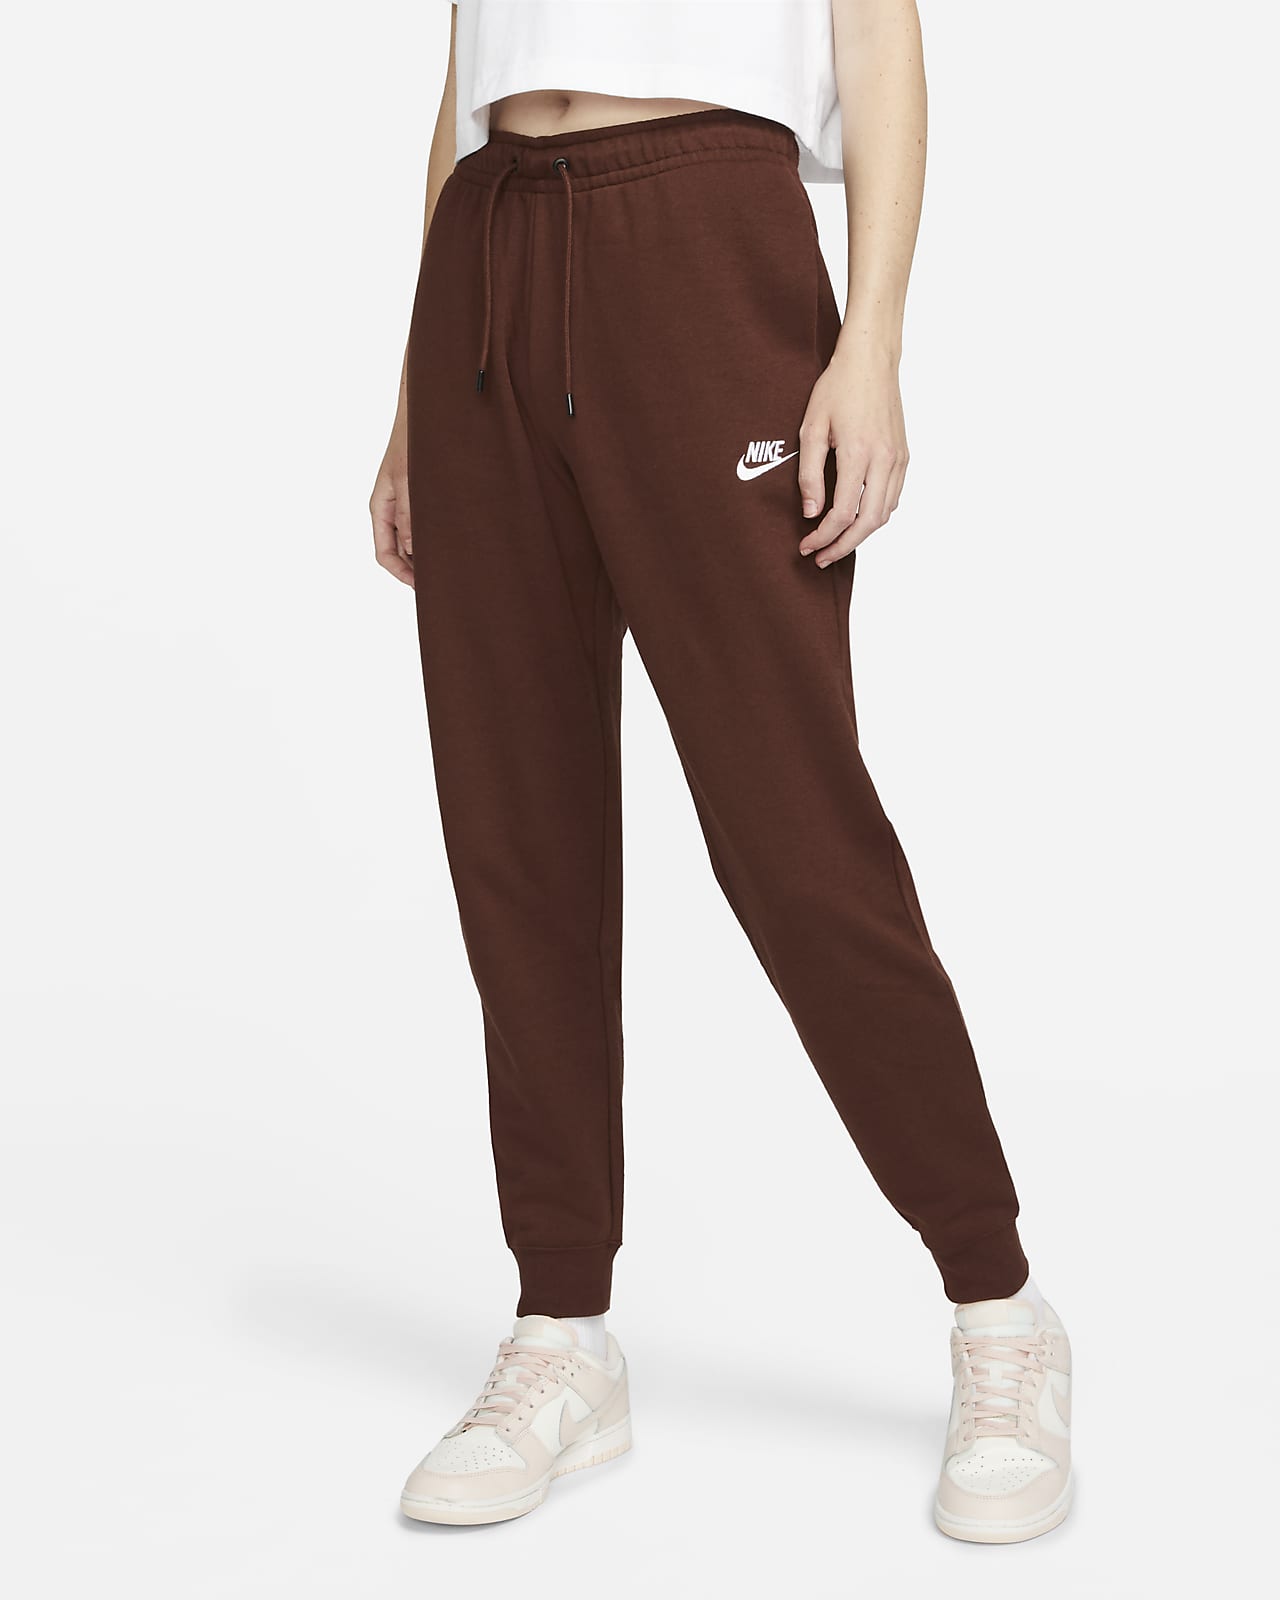 Pantalon en Fleece Nike Sportswear Essential pour Femme